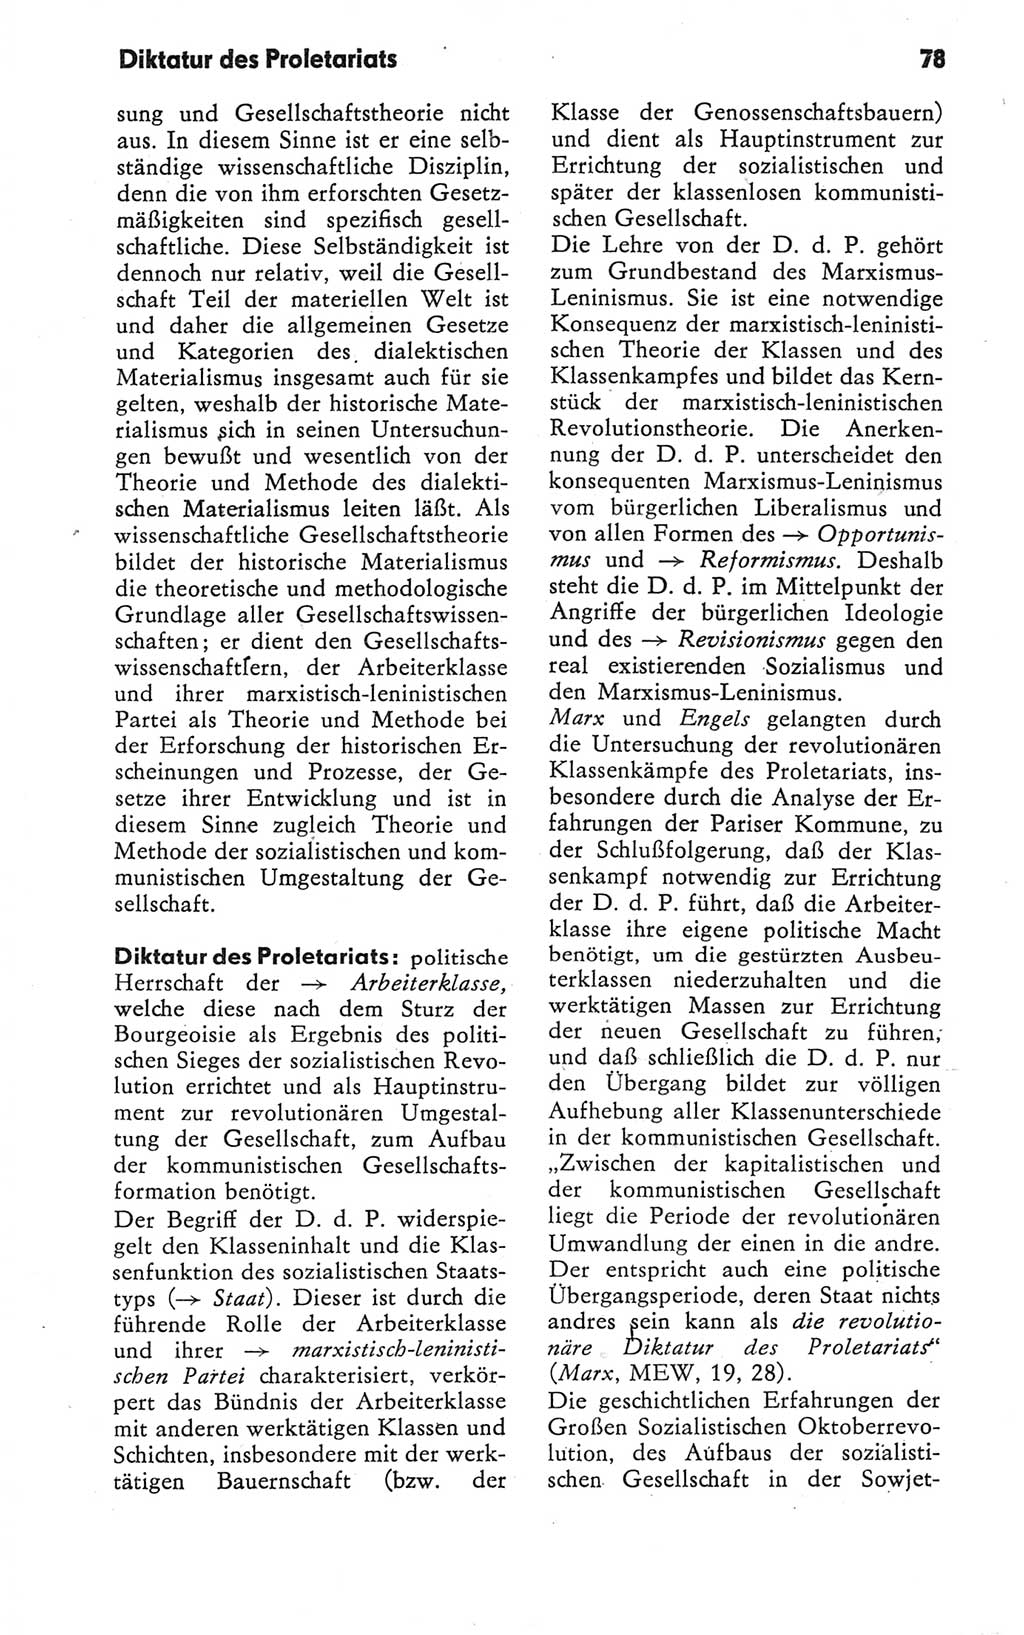 Kleines Wörterbuch der marxistisch-leninistischen Philosophie [Deutsche Demokratische Republik (DDR)] 1979, Seite 78 (Kl. Wb. ML Phil. DDR 1979, S. 78)